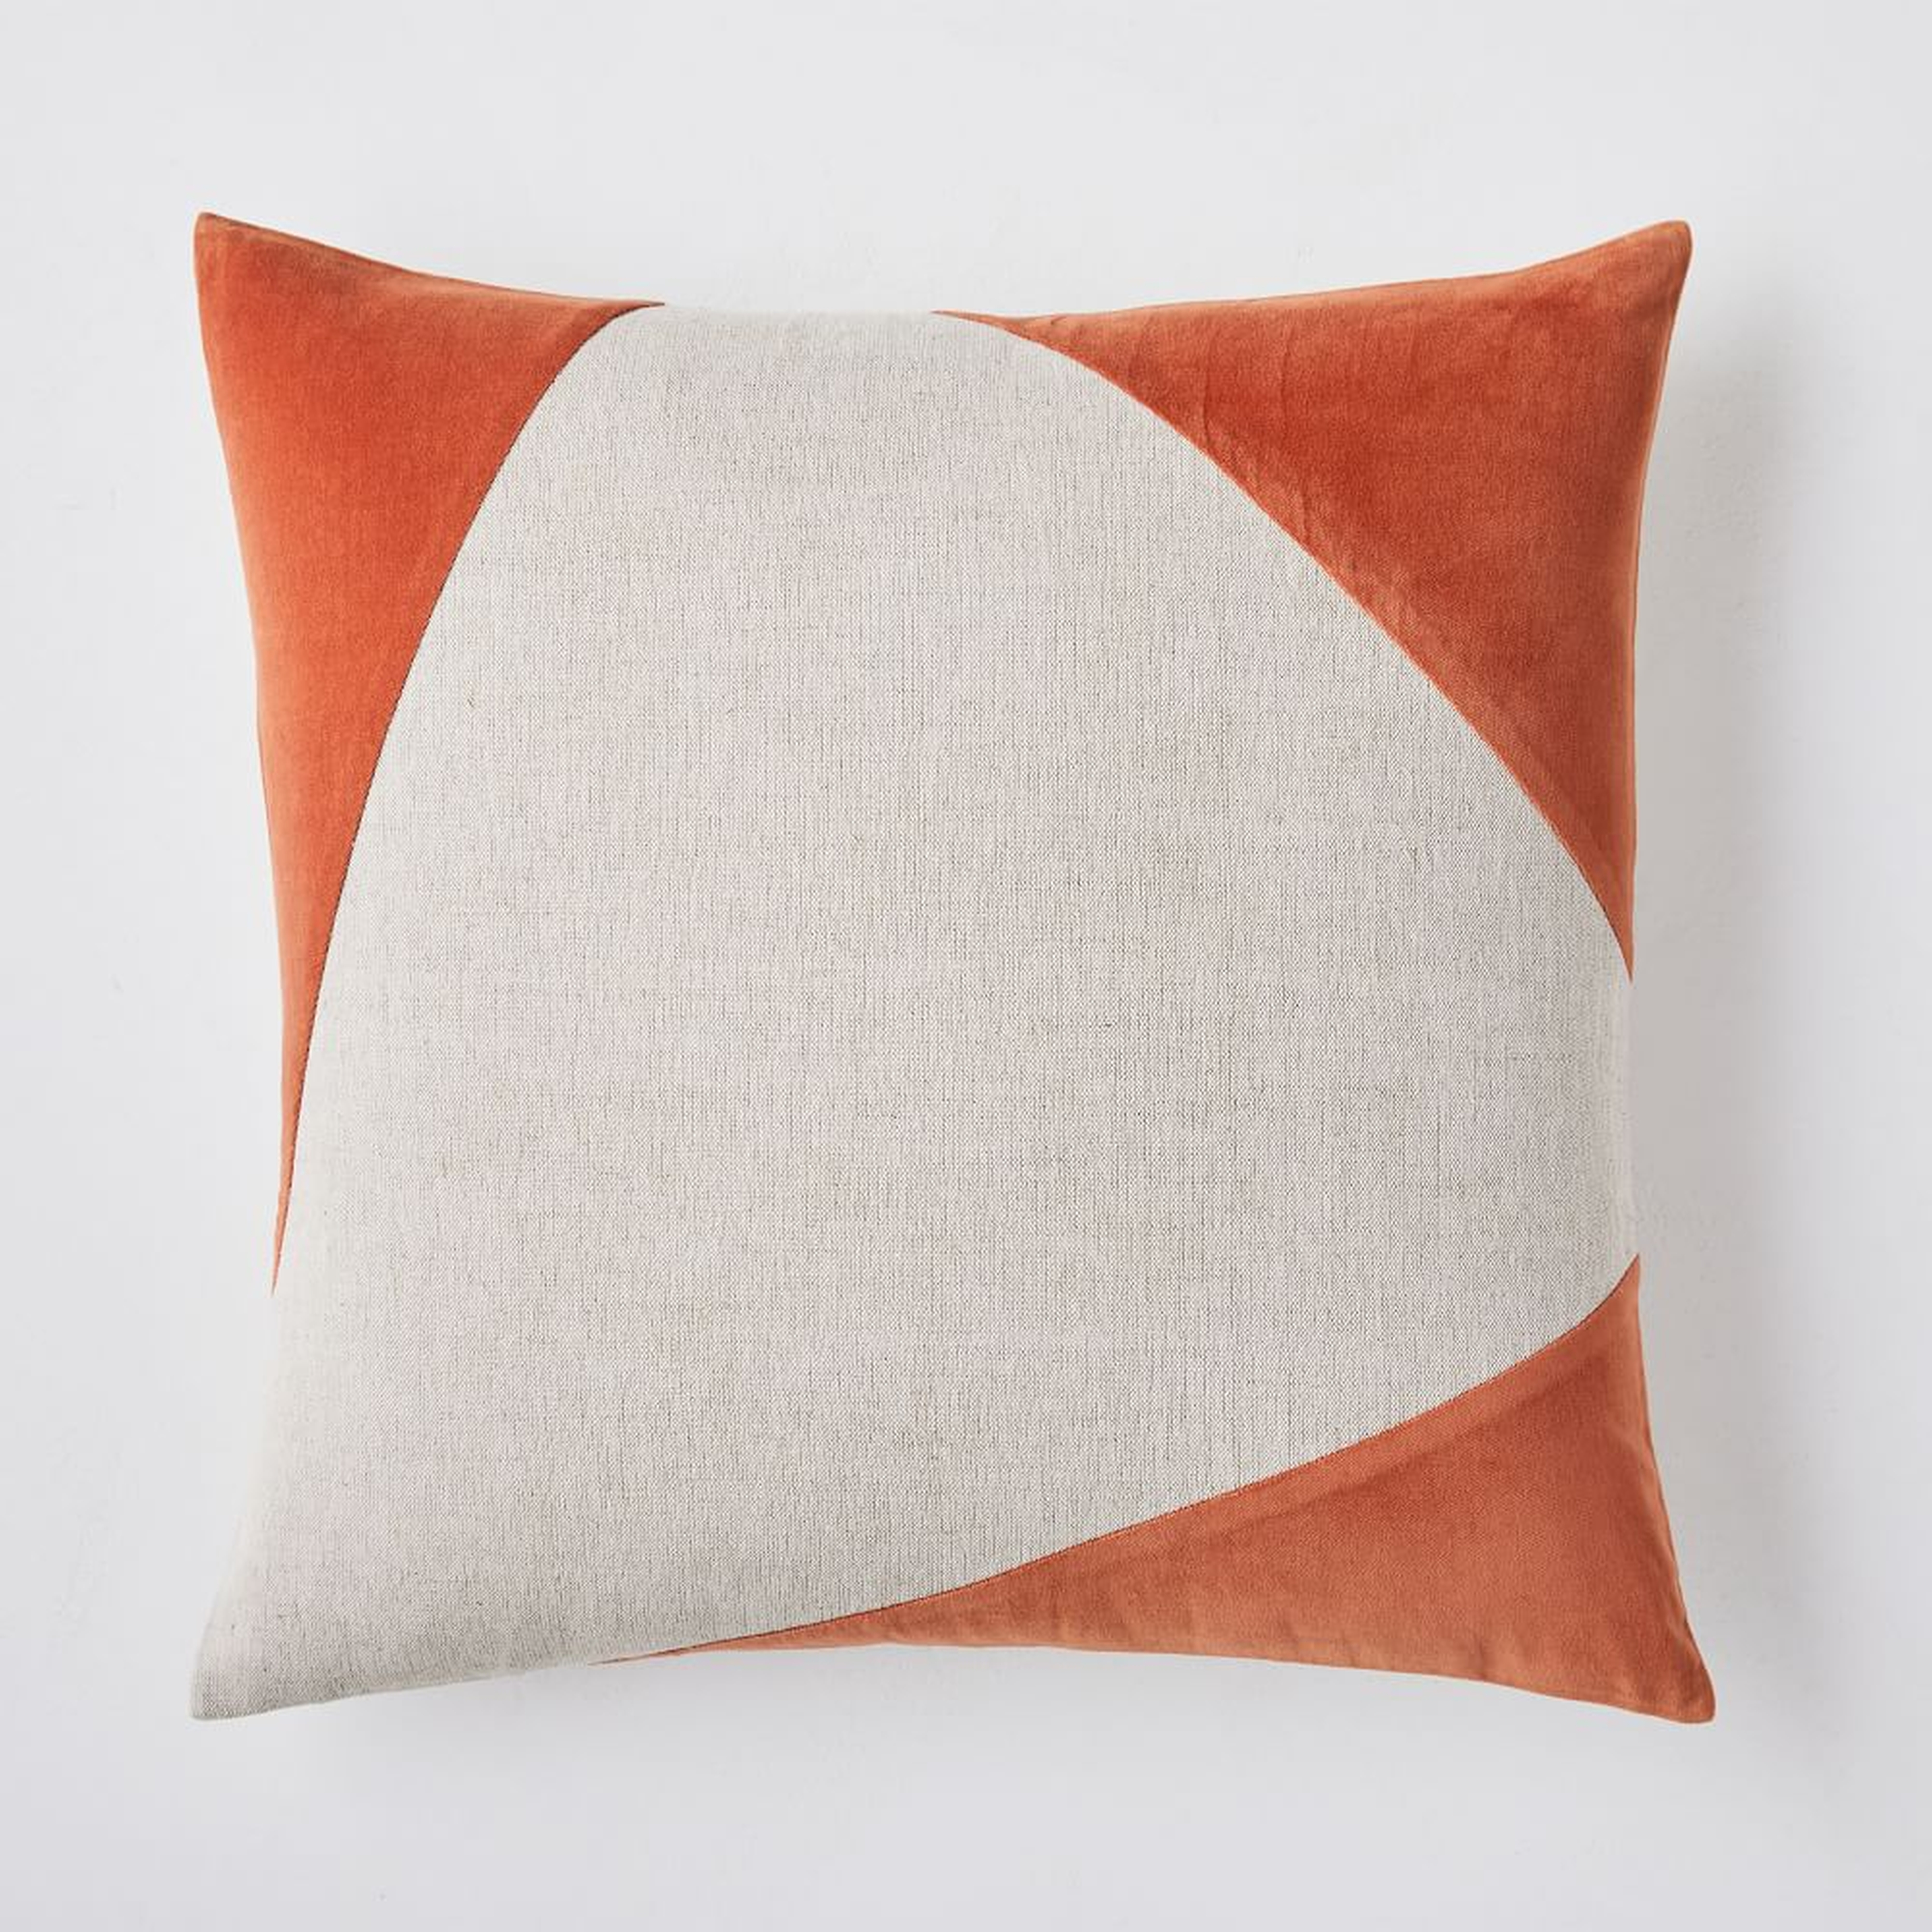 Cotton Linen + Velvet Corners Pillow Cover, 24"x24", Copper - West Elm